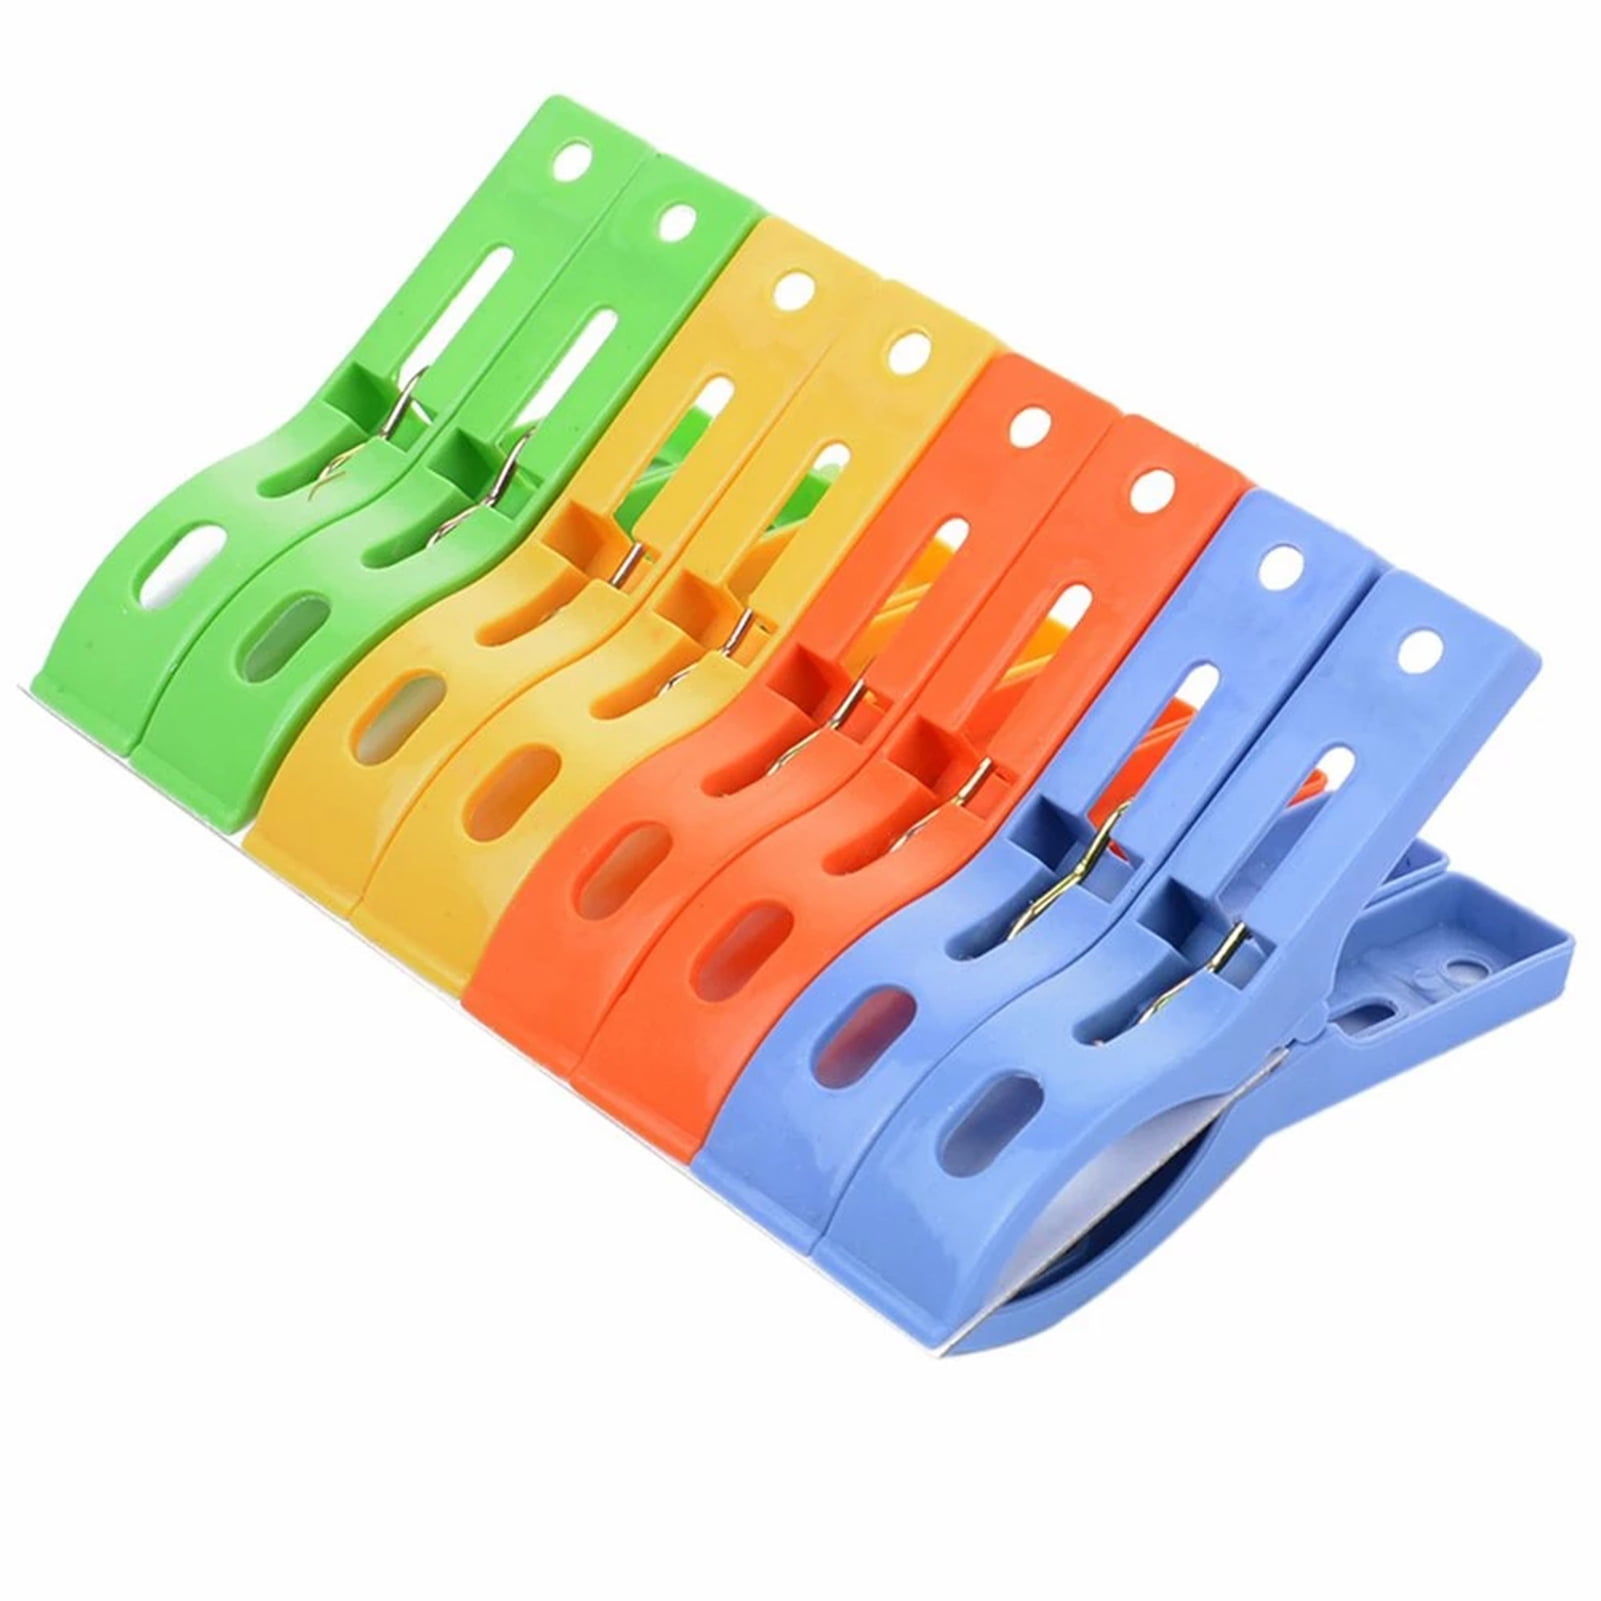 40 Pcs Plastic Clothespins Laundry Clothes Pins Plastic Cramp Clips 4 Colors USA 